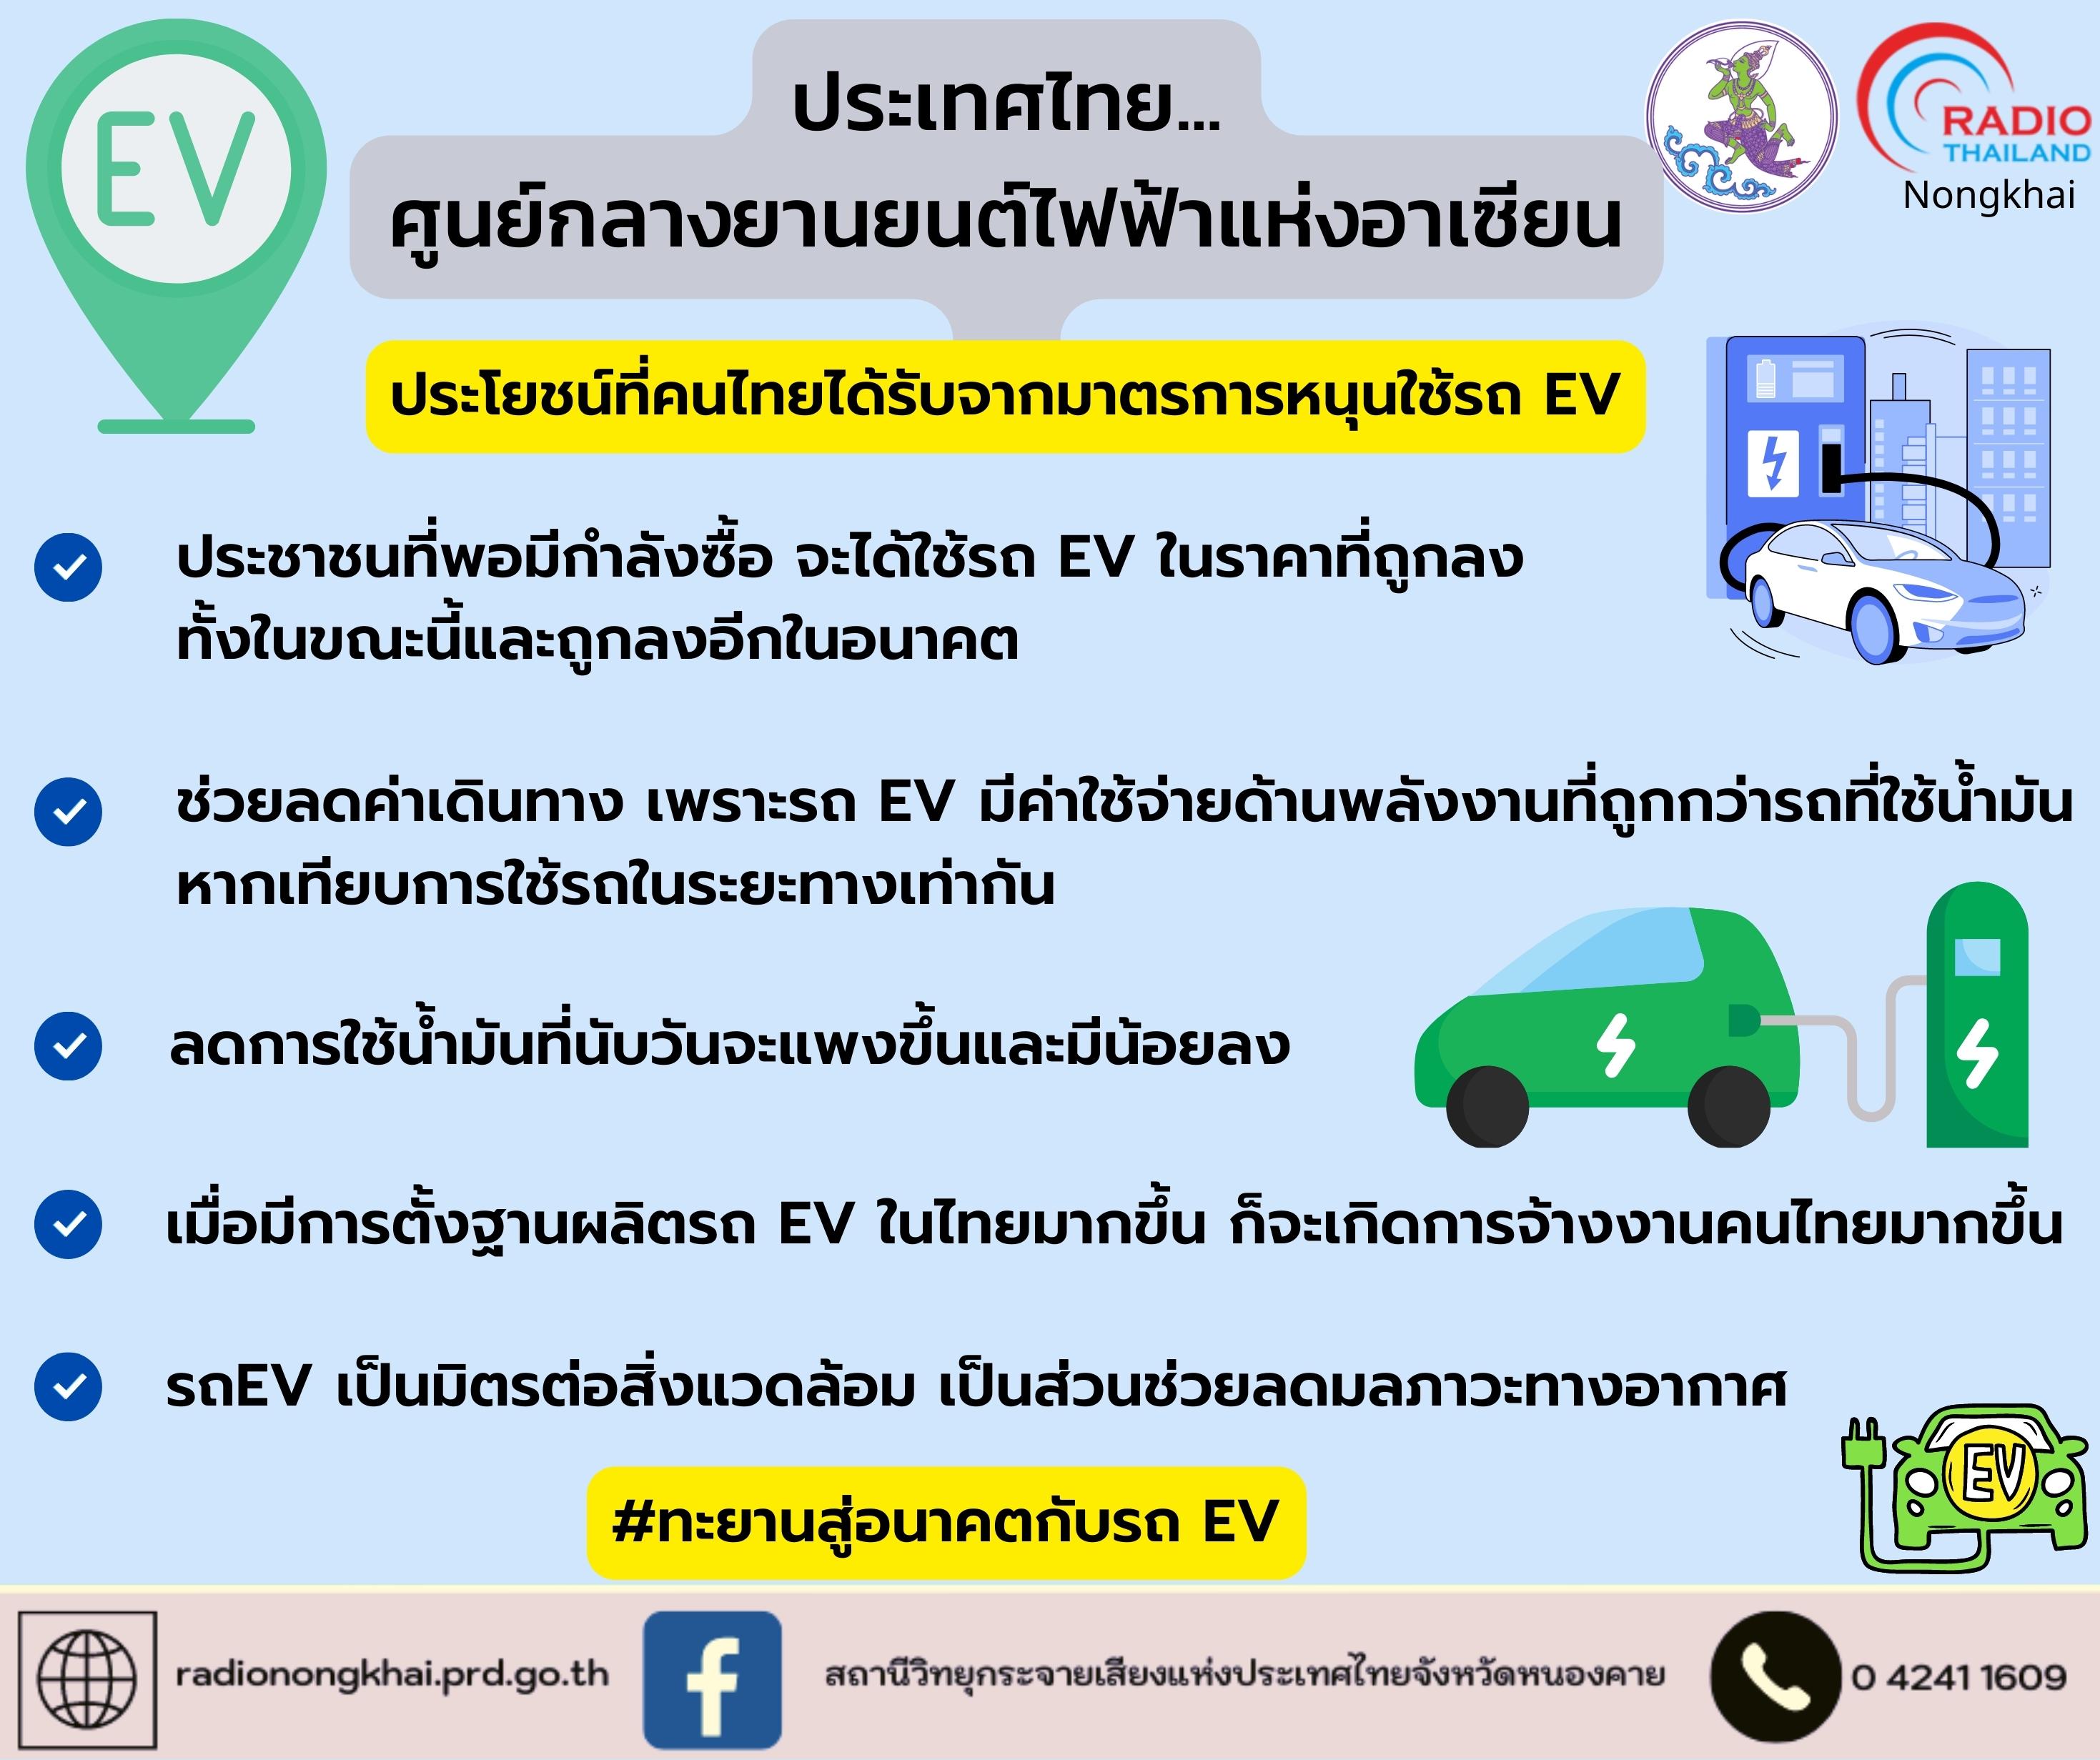 ประเทศไทย...ศูนย์กลางยานยนต์ไฟฟ้าแห่งอาเซียน